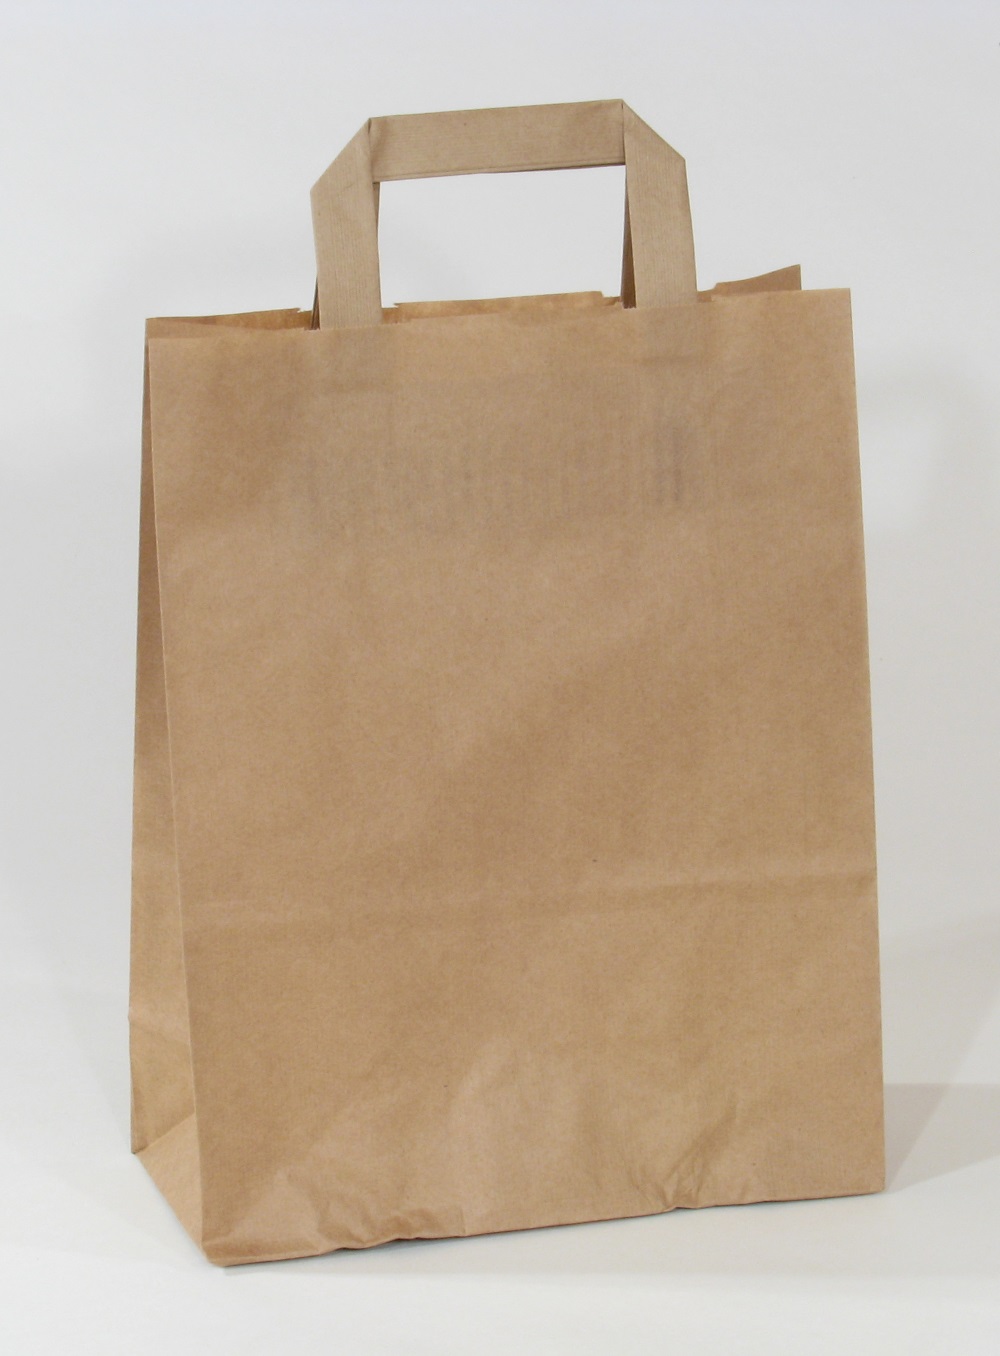 Papier-Tasche "Shopper", div. Formate, Farben: weiß, braun